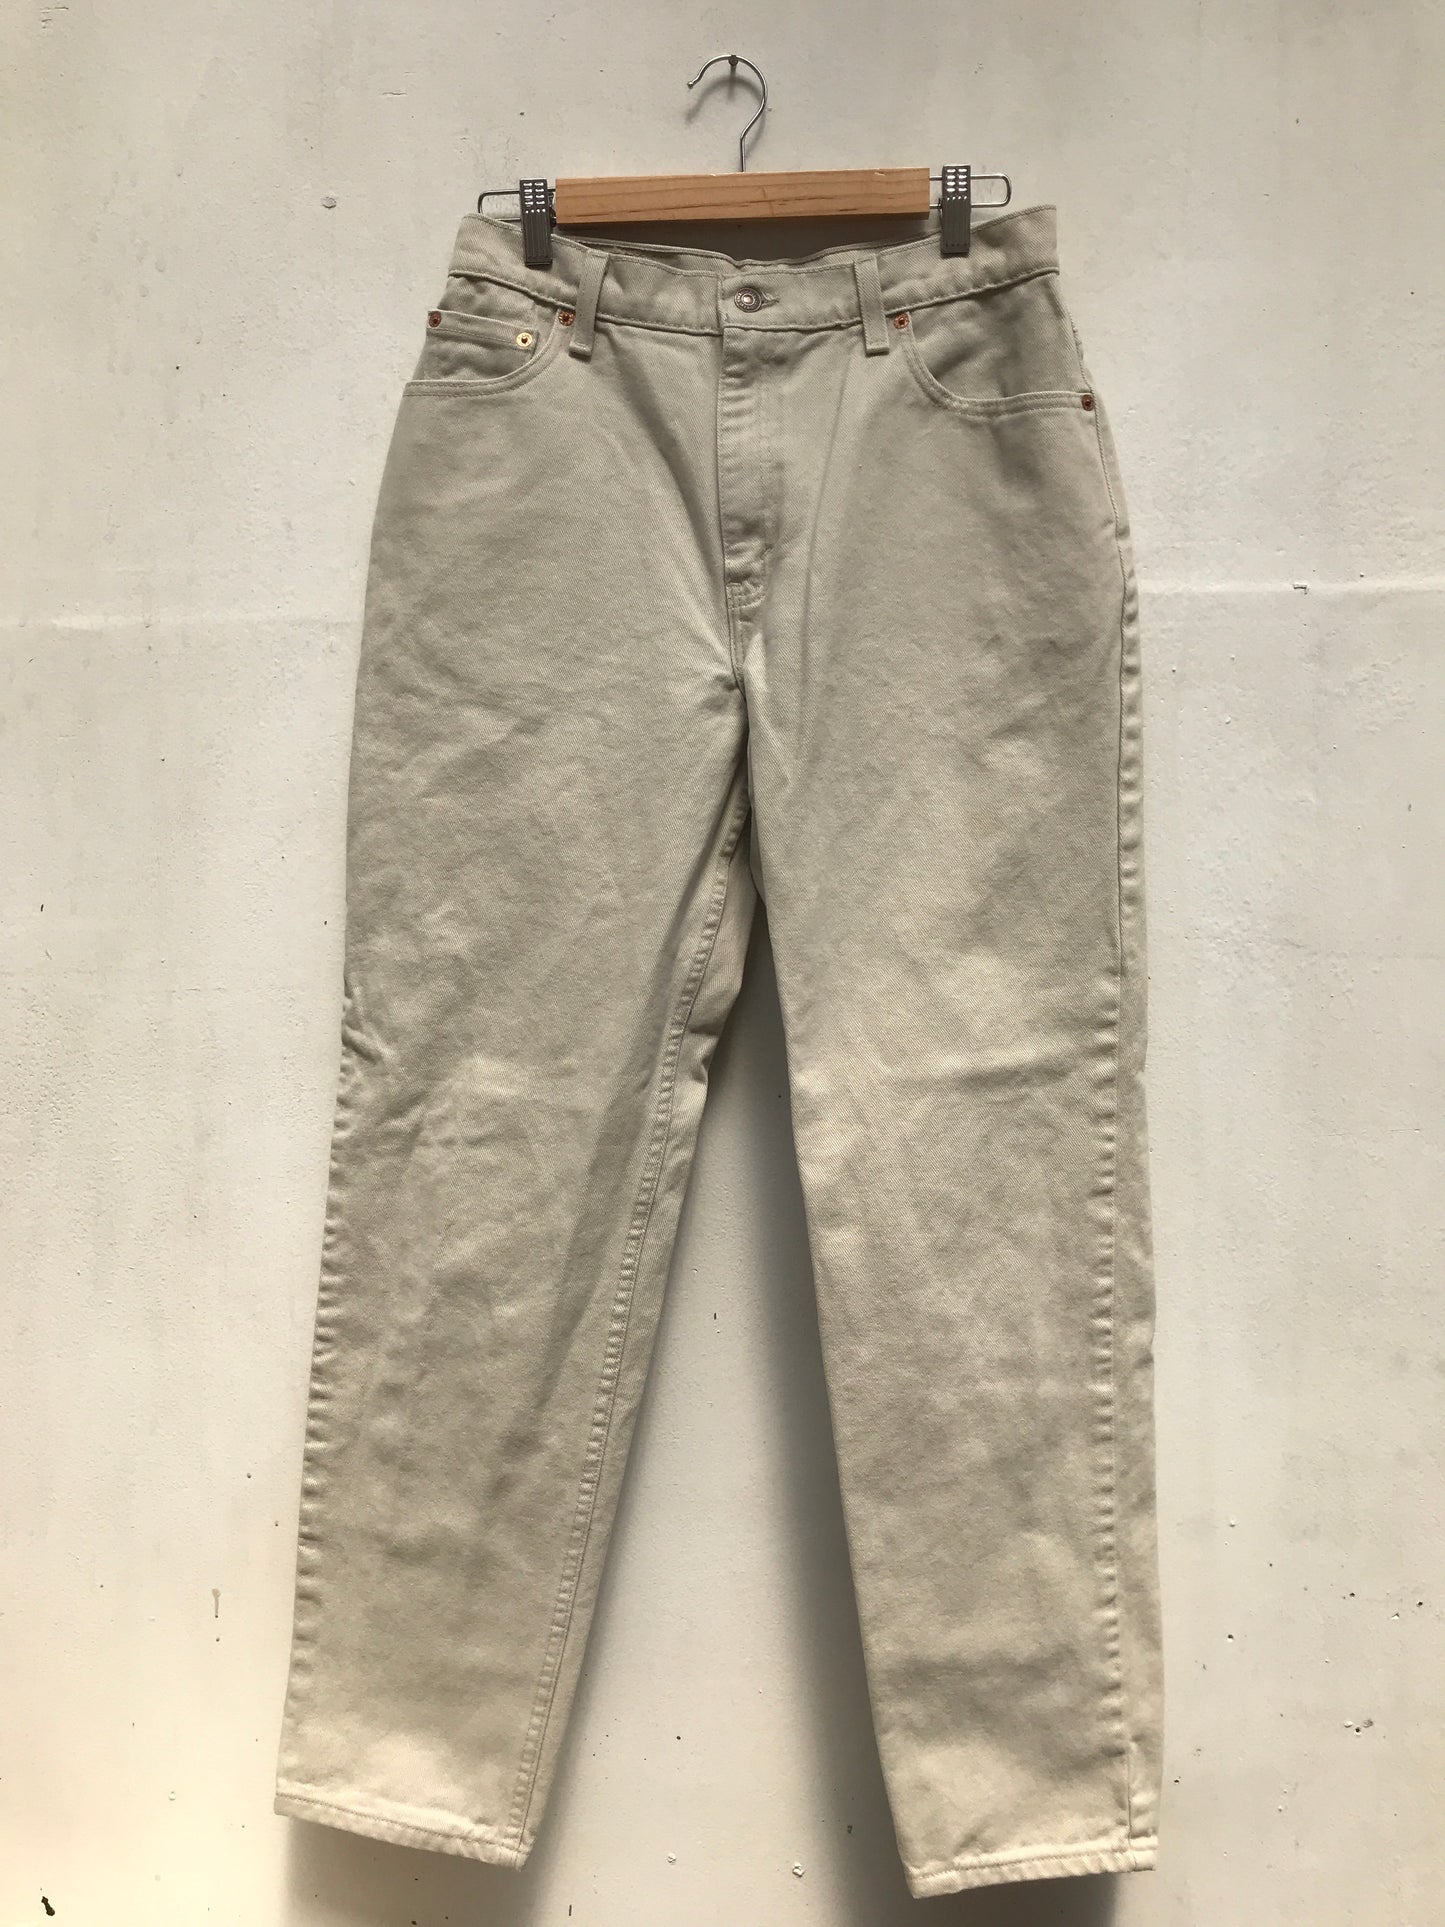 Jeans Levi's 550 Vintage